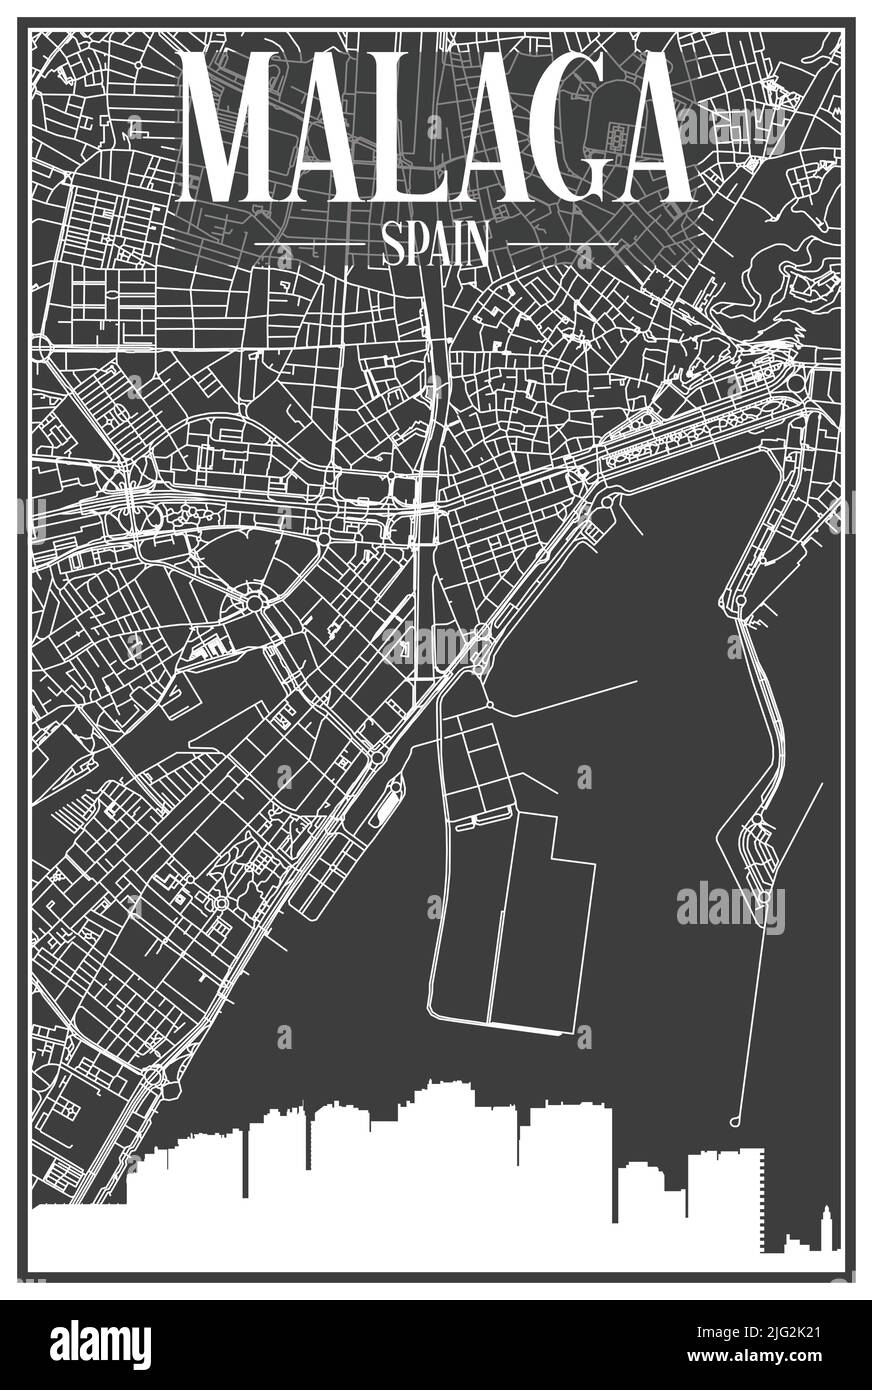 Stampa scura poster della città con skyline panoramico e rete di strade disegnate a mano su sfondo grigio scuro del centro di MALAGA, SPAGNA Illustrazione Vettoriale